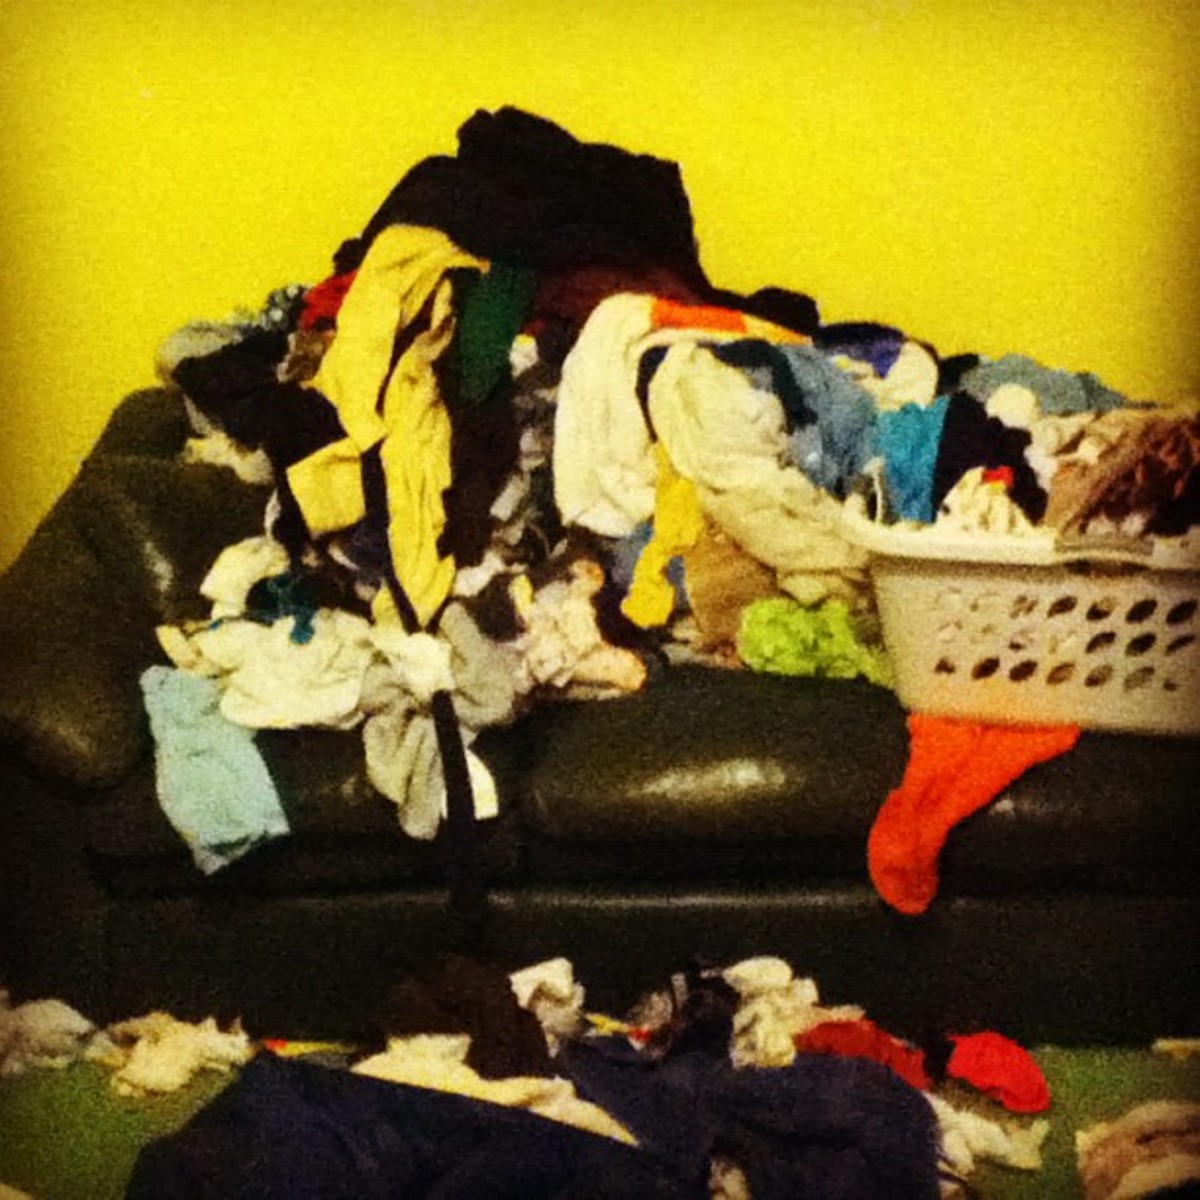 Laundry Pile